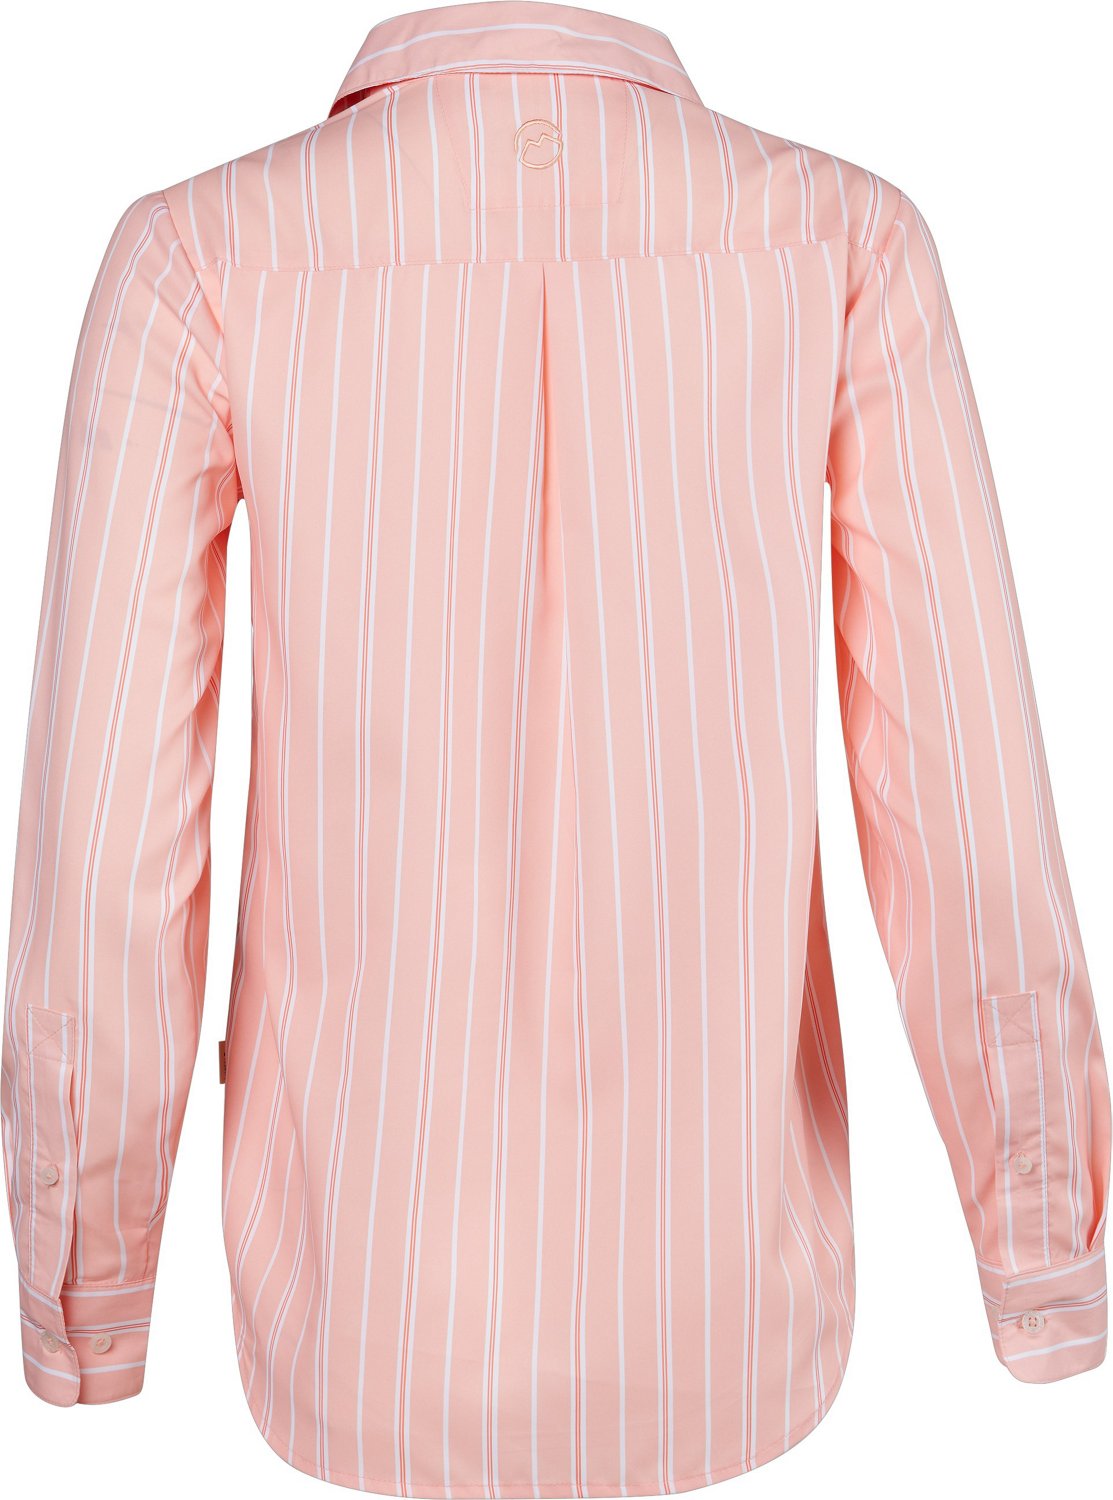 Women's Pink Gingham Fishing Shirt